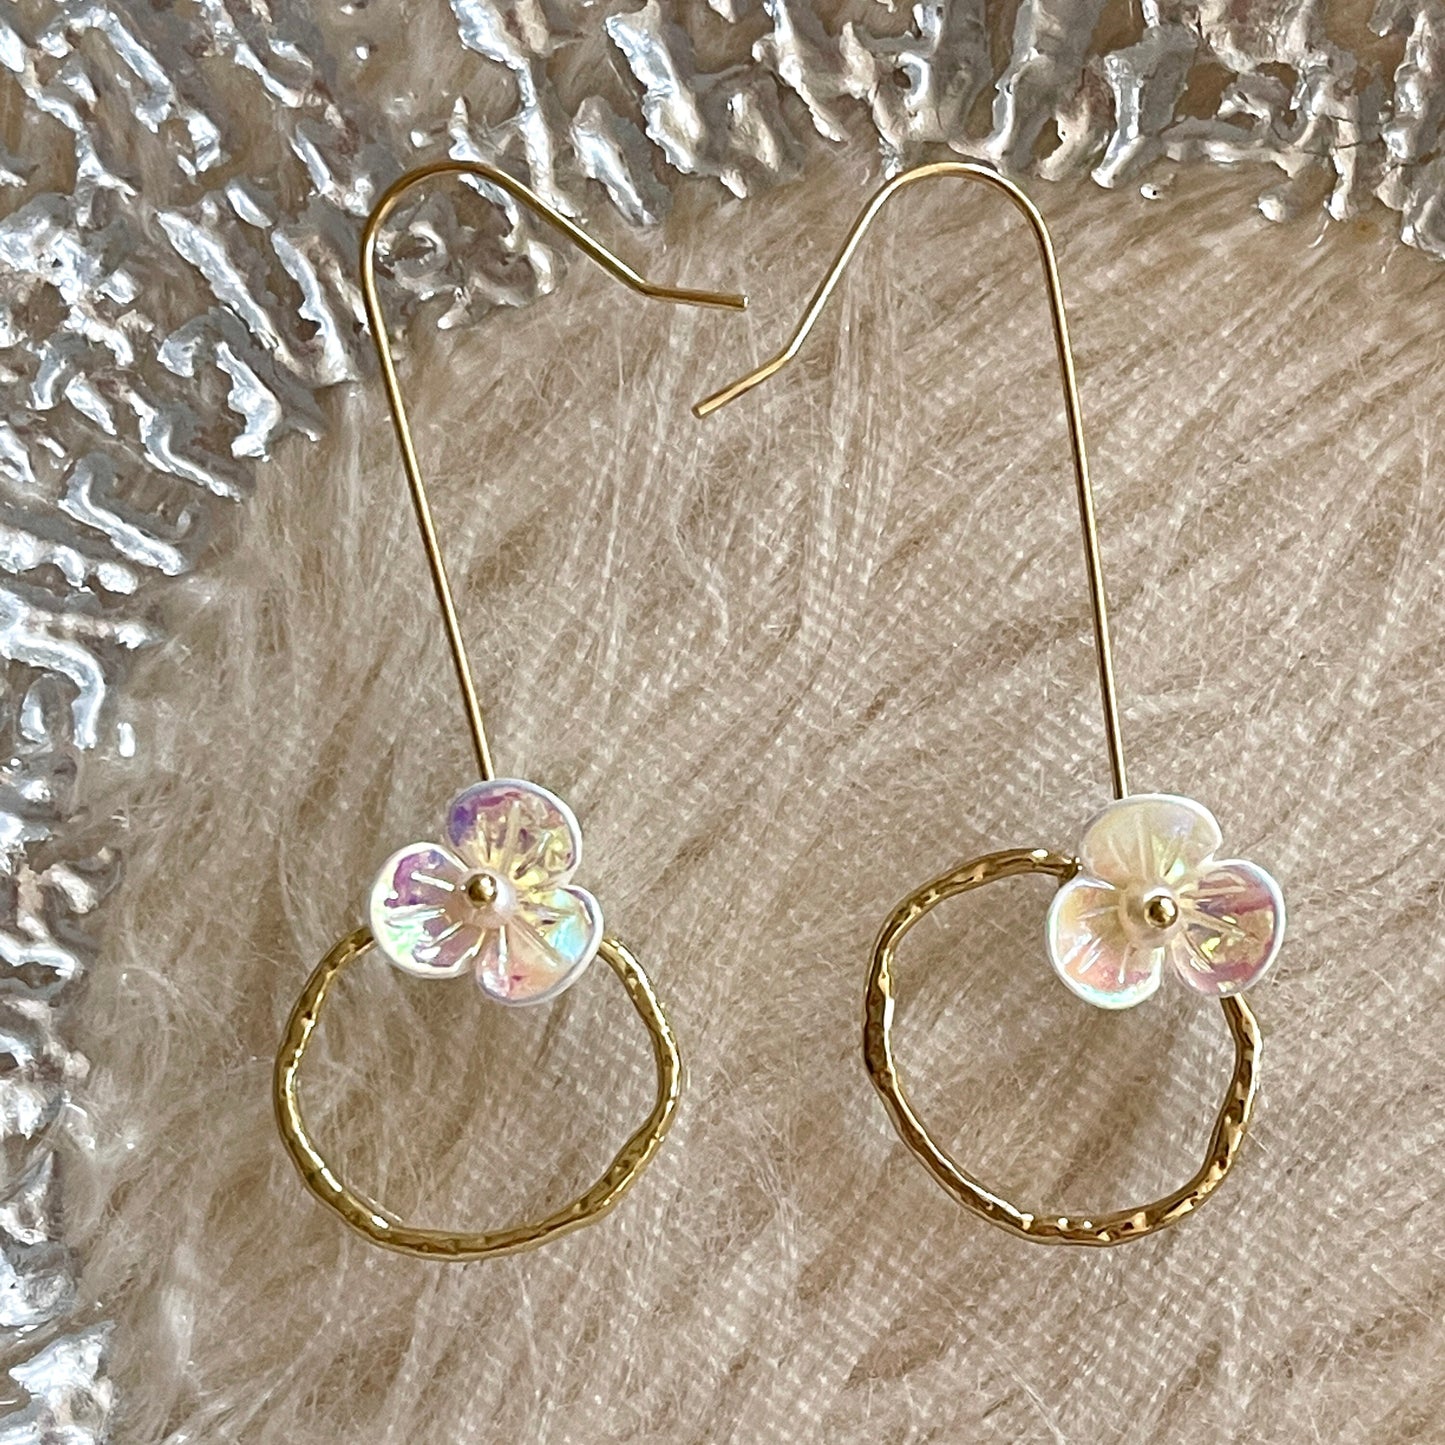 Gold hoop dangle earrings, color changing flower earrings, loop ring drop earrings, unique statement dangle, geometric earrings, y2k quirky